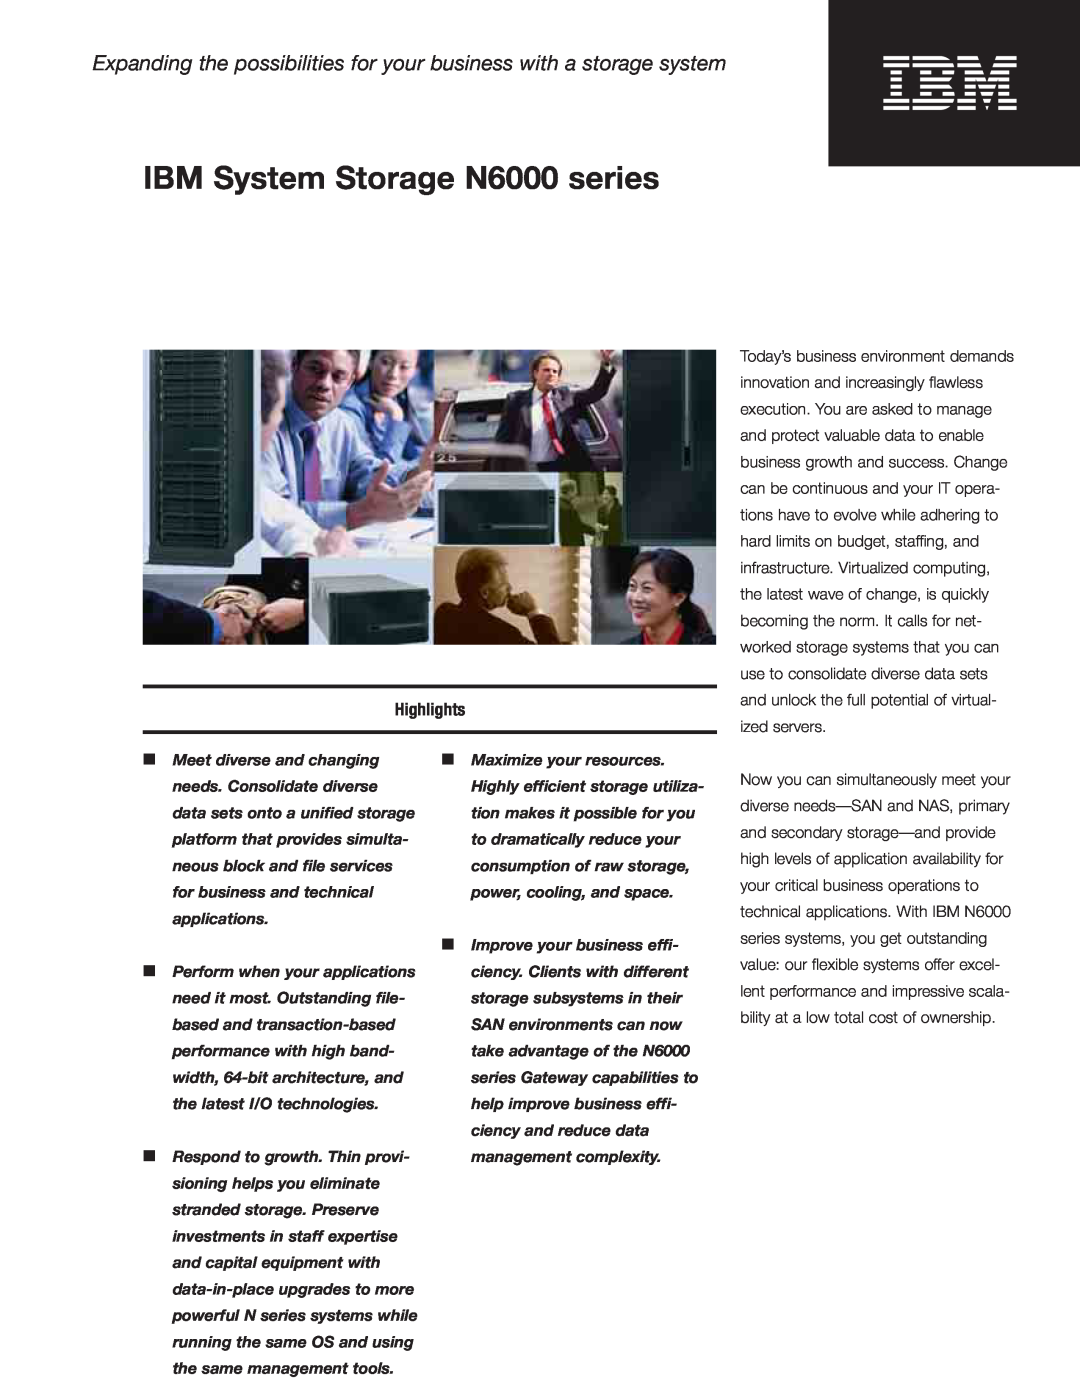 IBM N6060, N6040, N6070 manual Highlights, IBM System Storage N6000 series 